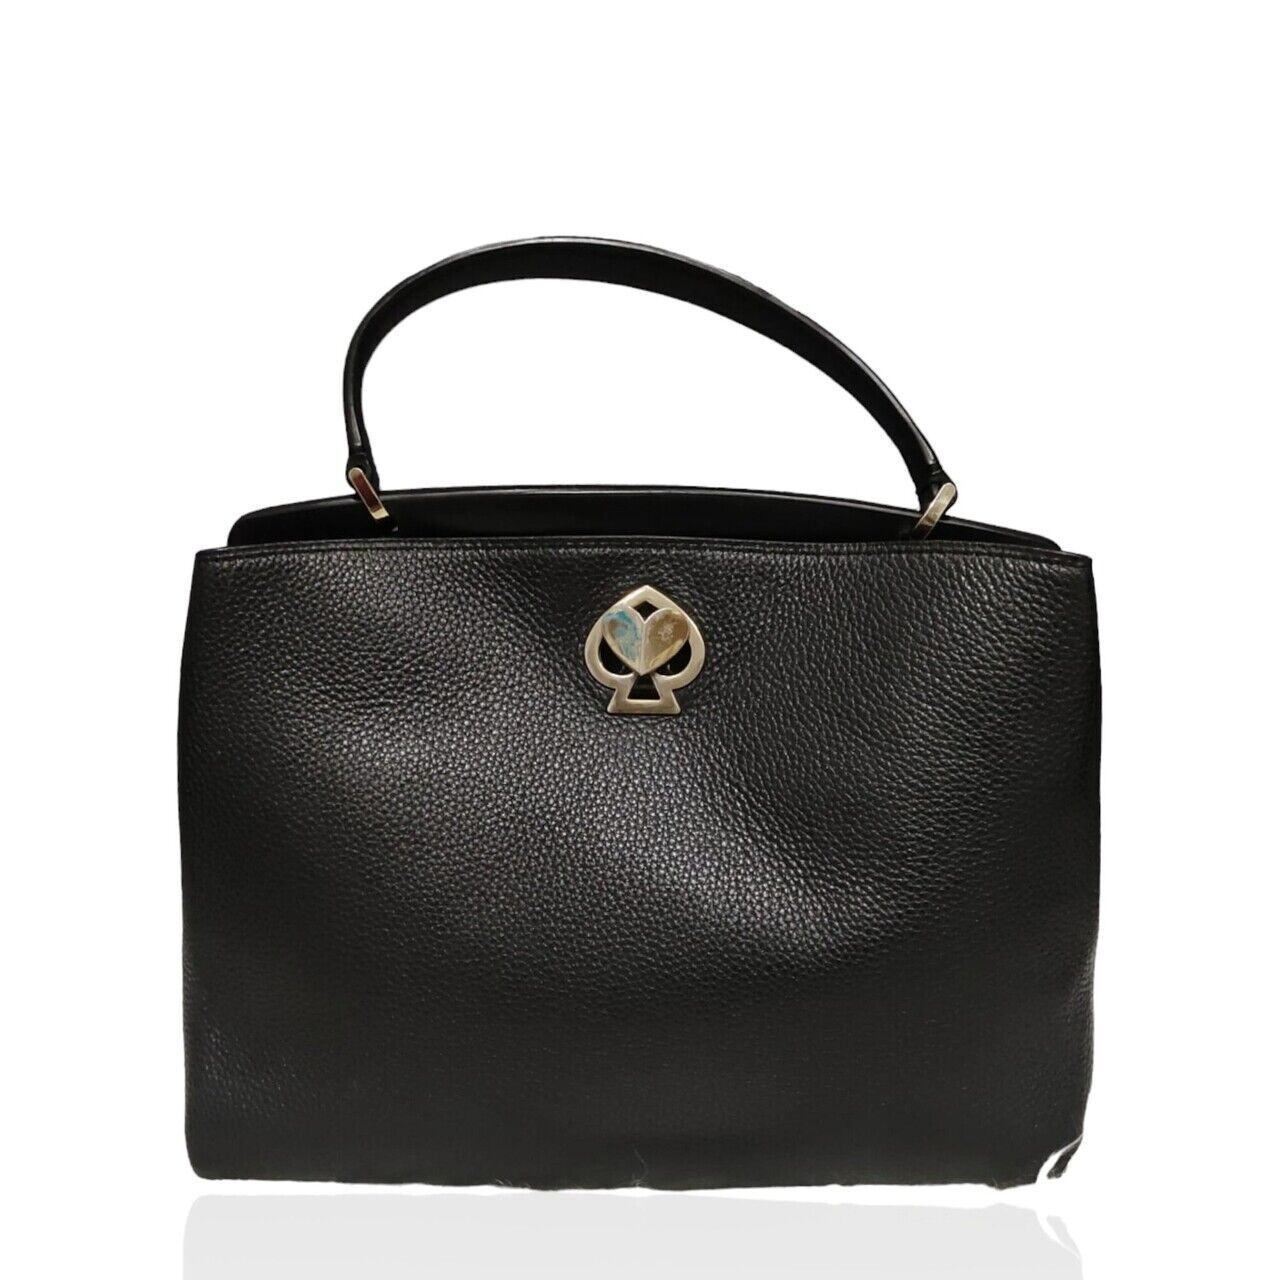 Kate Spade Black Handbag